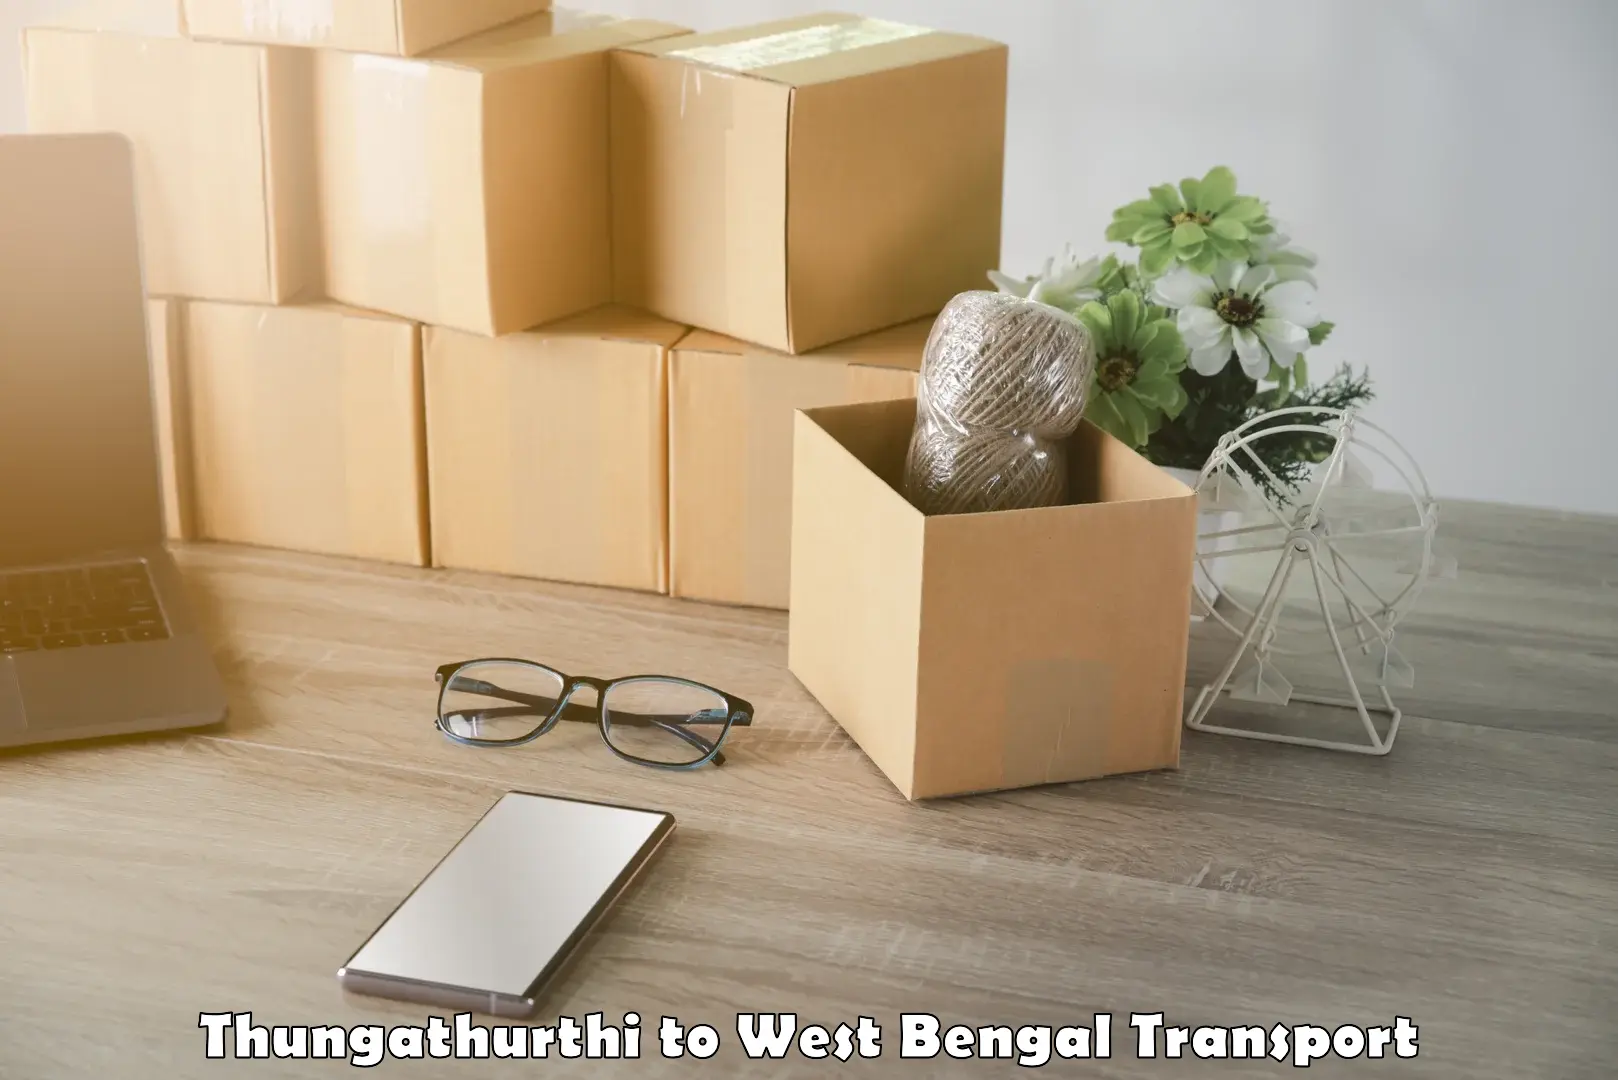 Cargo transport services Thungathurthi to Kolaghat